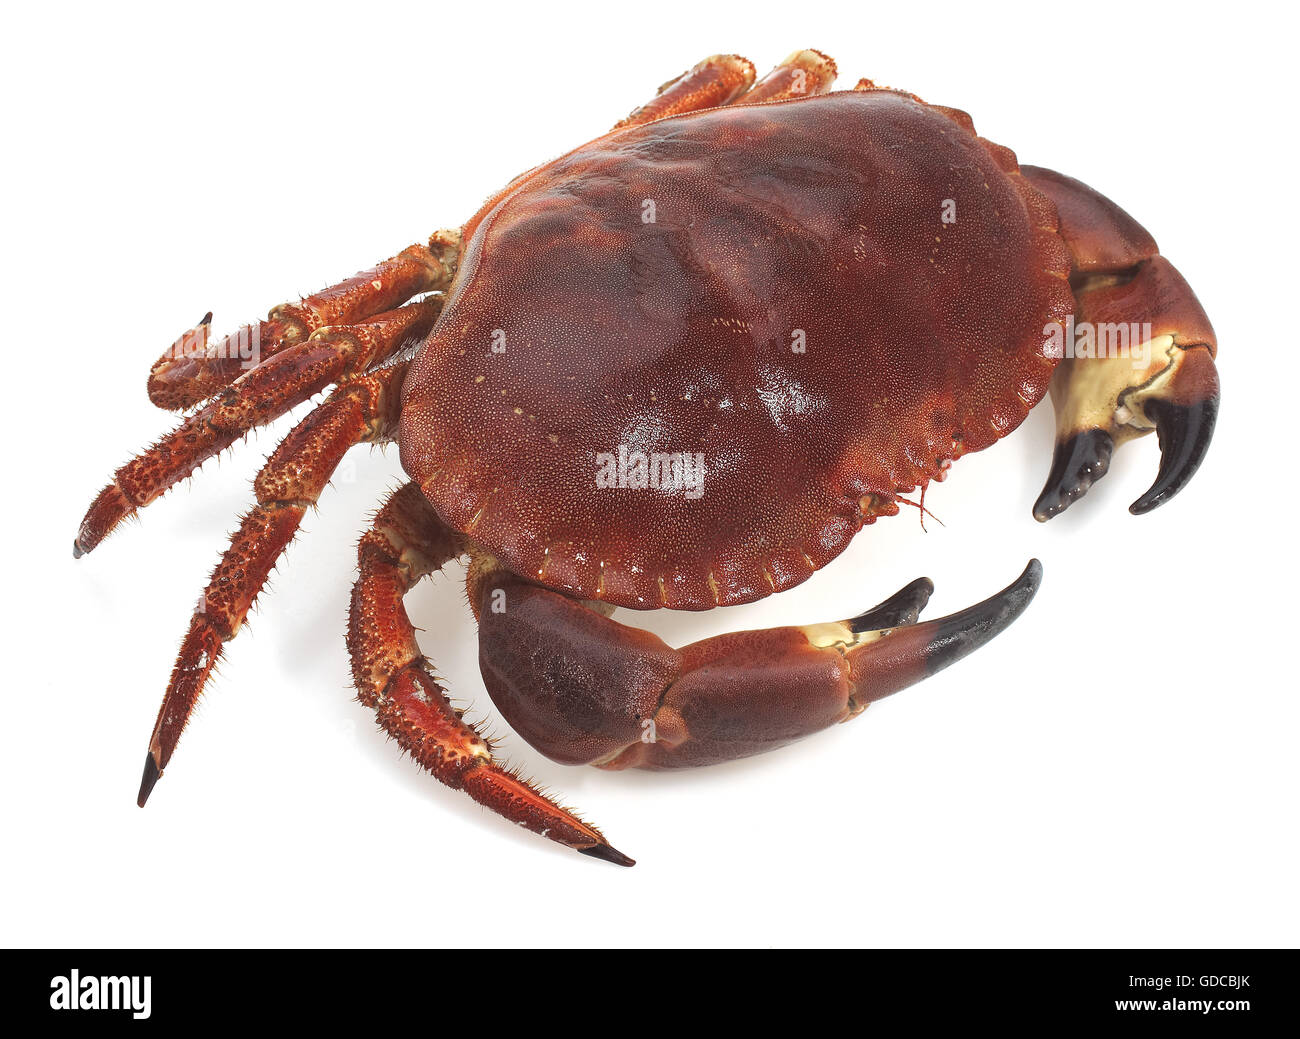 Crabe frais, Cancer pagurus against White Background Banque D'Images